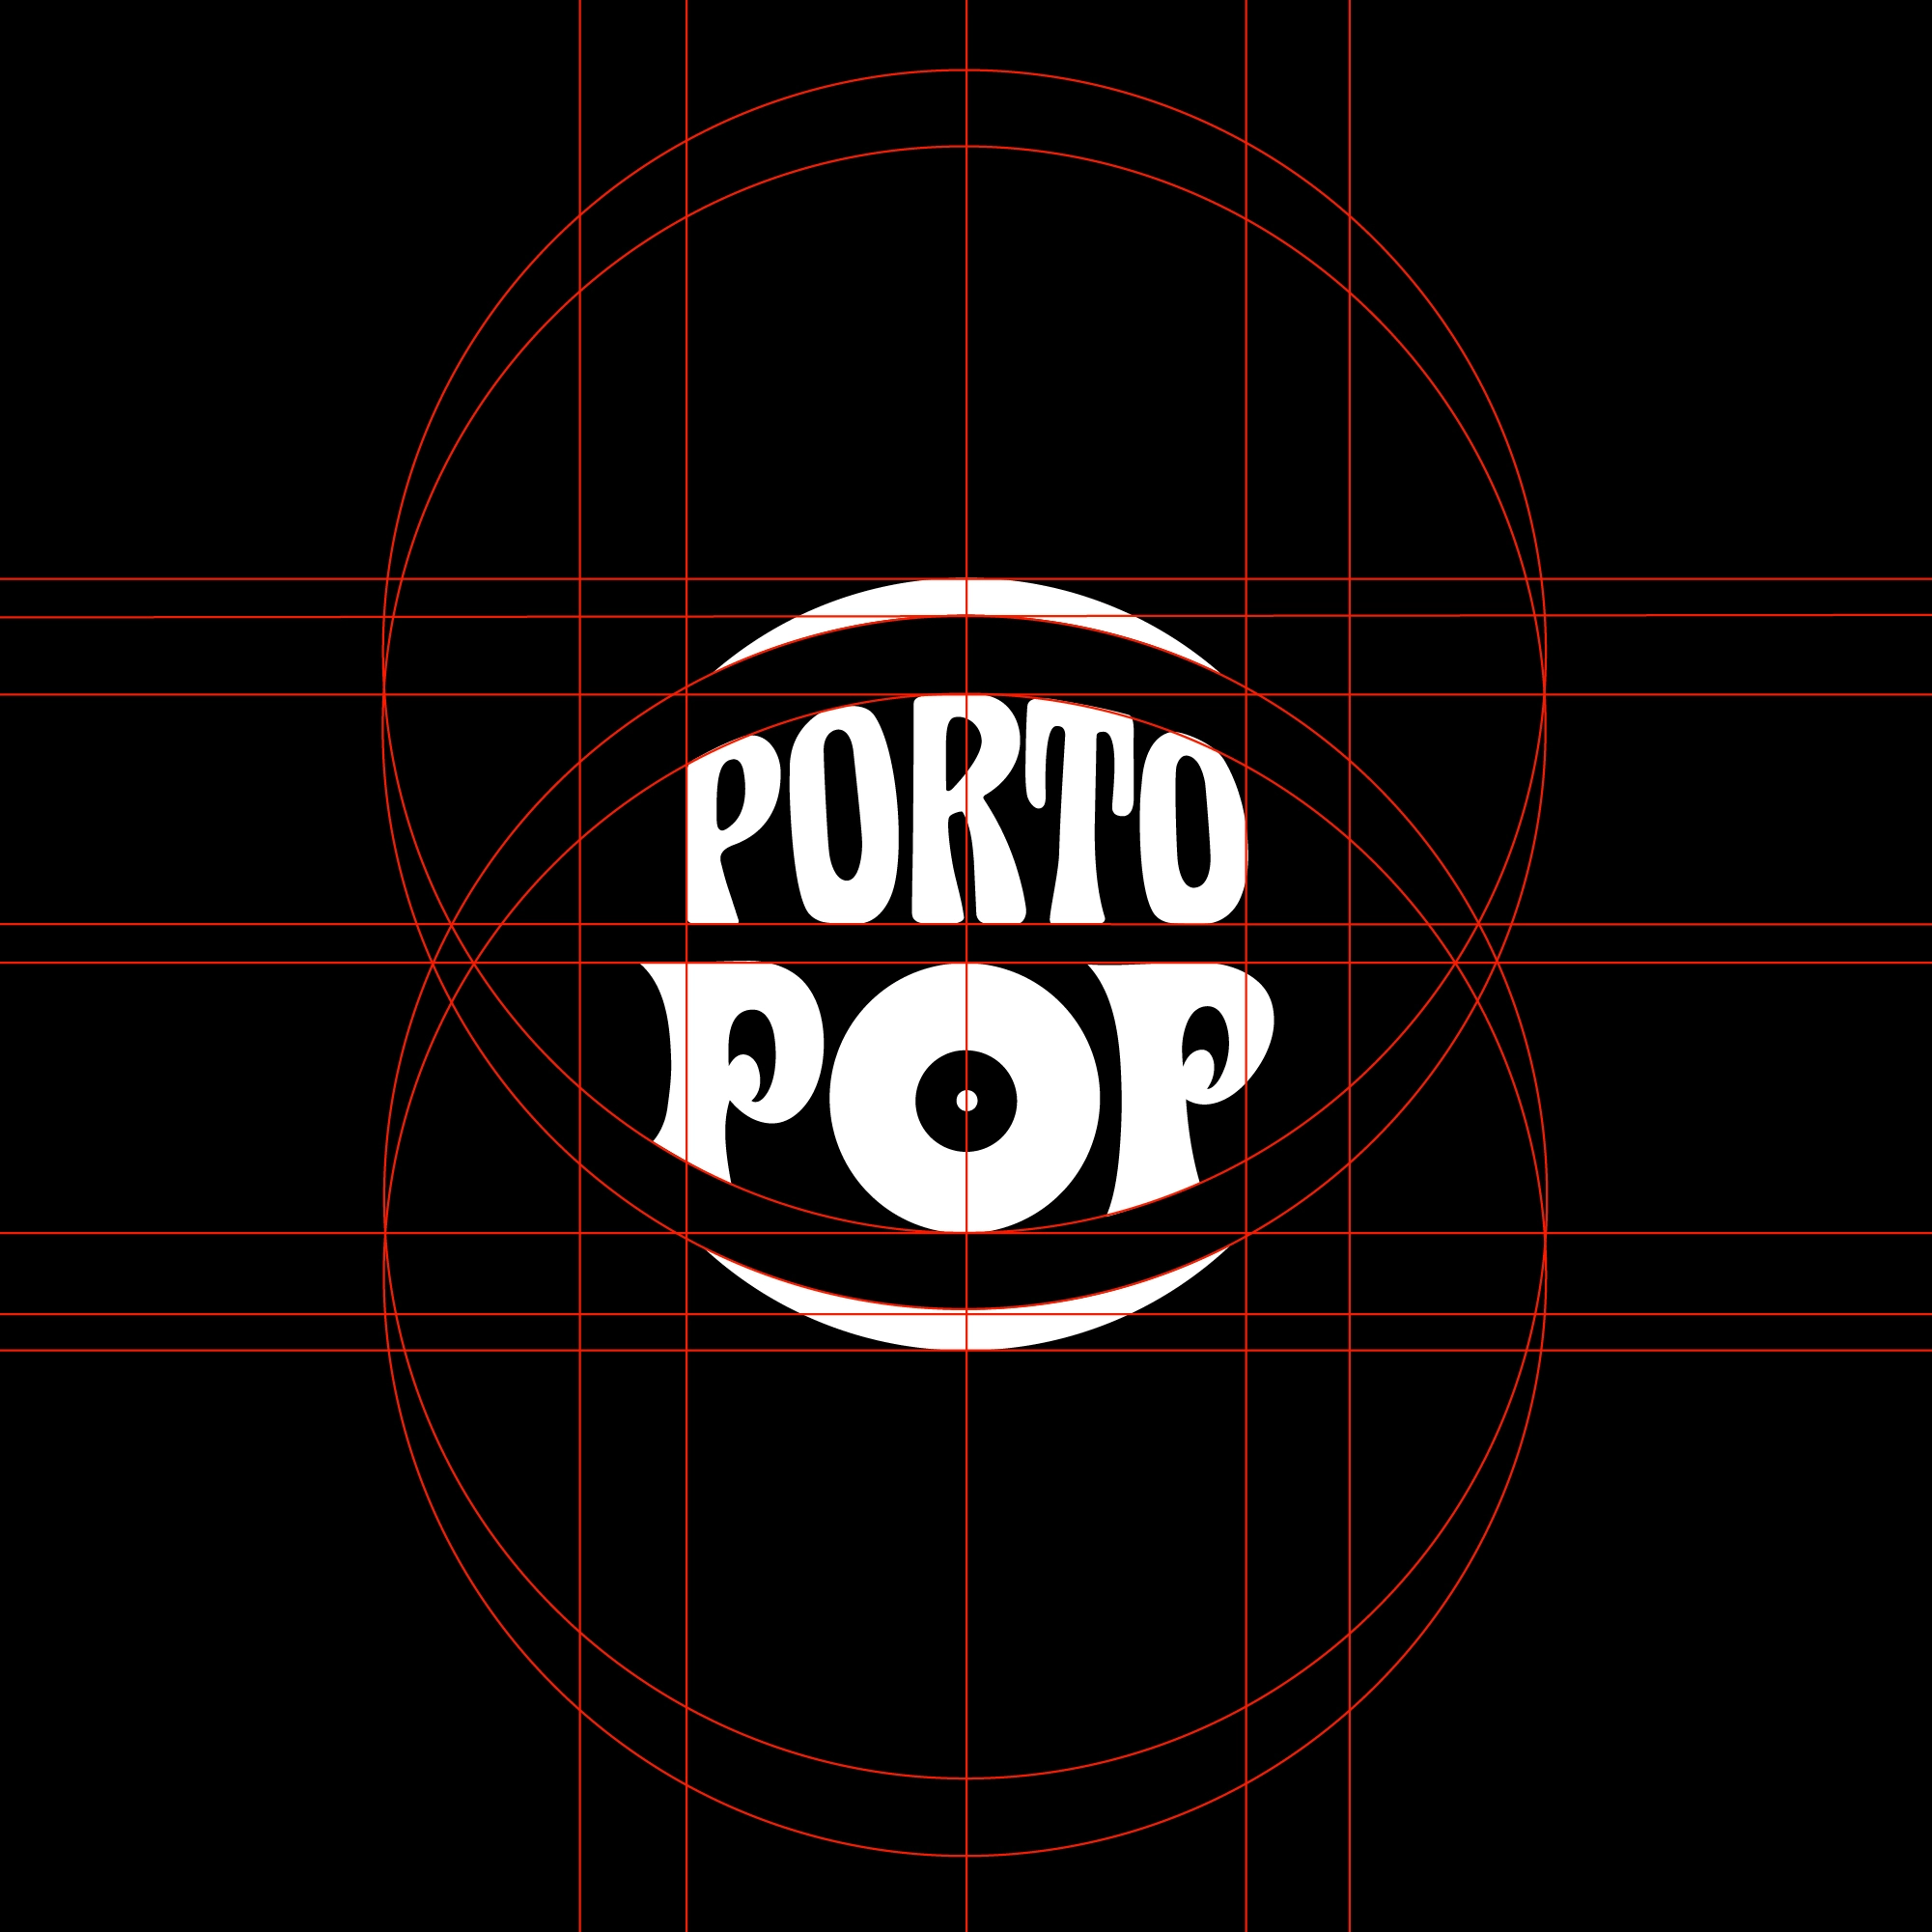 grid Funky and vintage logo design, based on rock cds, pop art, logo design for Porto pop in black and white